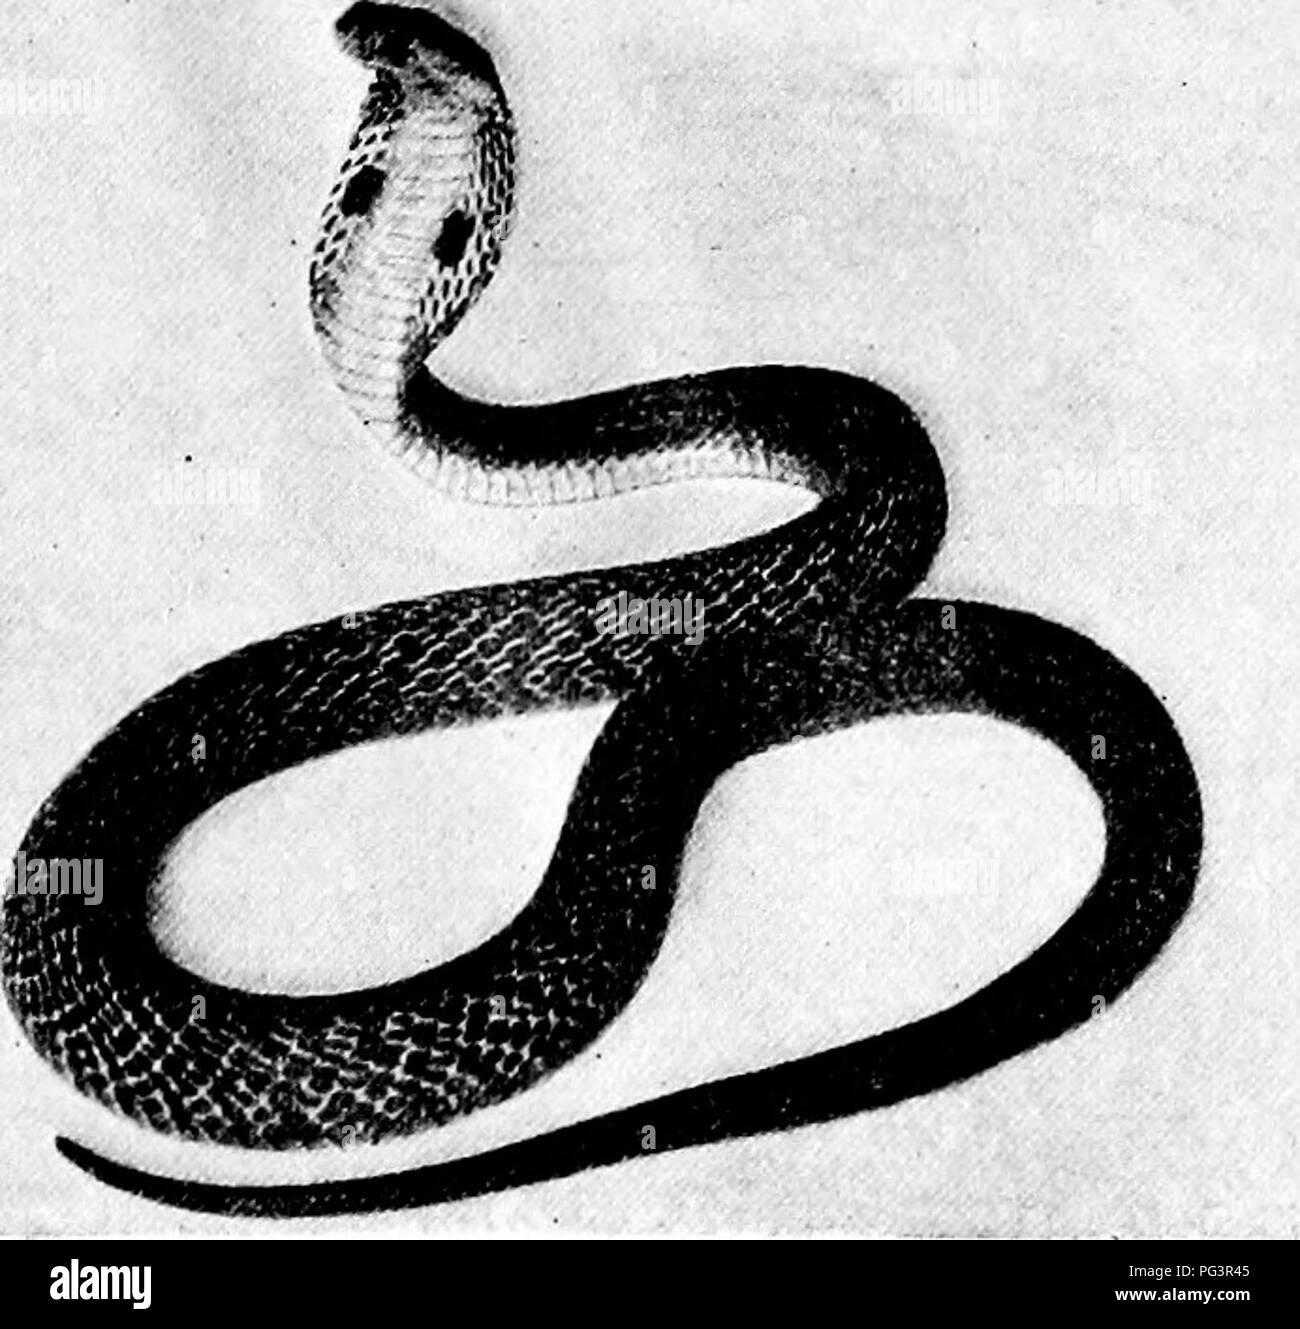 . Guide officiel populaire à la New York Zoological Park. New York Zoological Park. NEW YORK ZOOLOGICAL PARK. 181. COBRA-DE-CAPELLO. Sula, souvent appelé Snake-Eating Cobra, est le plus dangereux de tous les serpents, parce que c'est la plus grande et la plus ath- letic des espèces venimeuses, et pour sa bite il n'y a pas d'antidote efficace. Il se nourrit uniquement sur la vie des serpents. Le beau spécimen exposé est d'environ dix pieds de longueur. Le cobra-de-Capello, {Naja tripudians), dont quelques beaux spécimens sont indiqués, est la terreur de l'Inde, où il tue entre 18 000 et 20 000 personnes par an ! C'est le m Banque D'Images